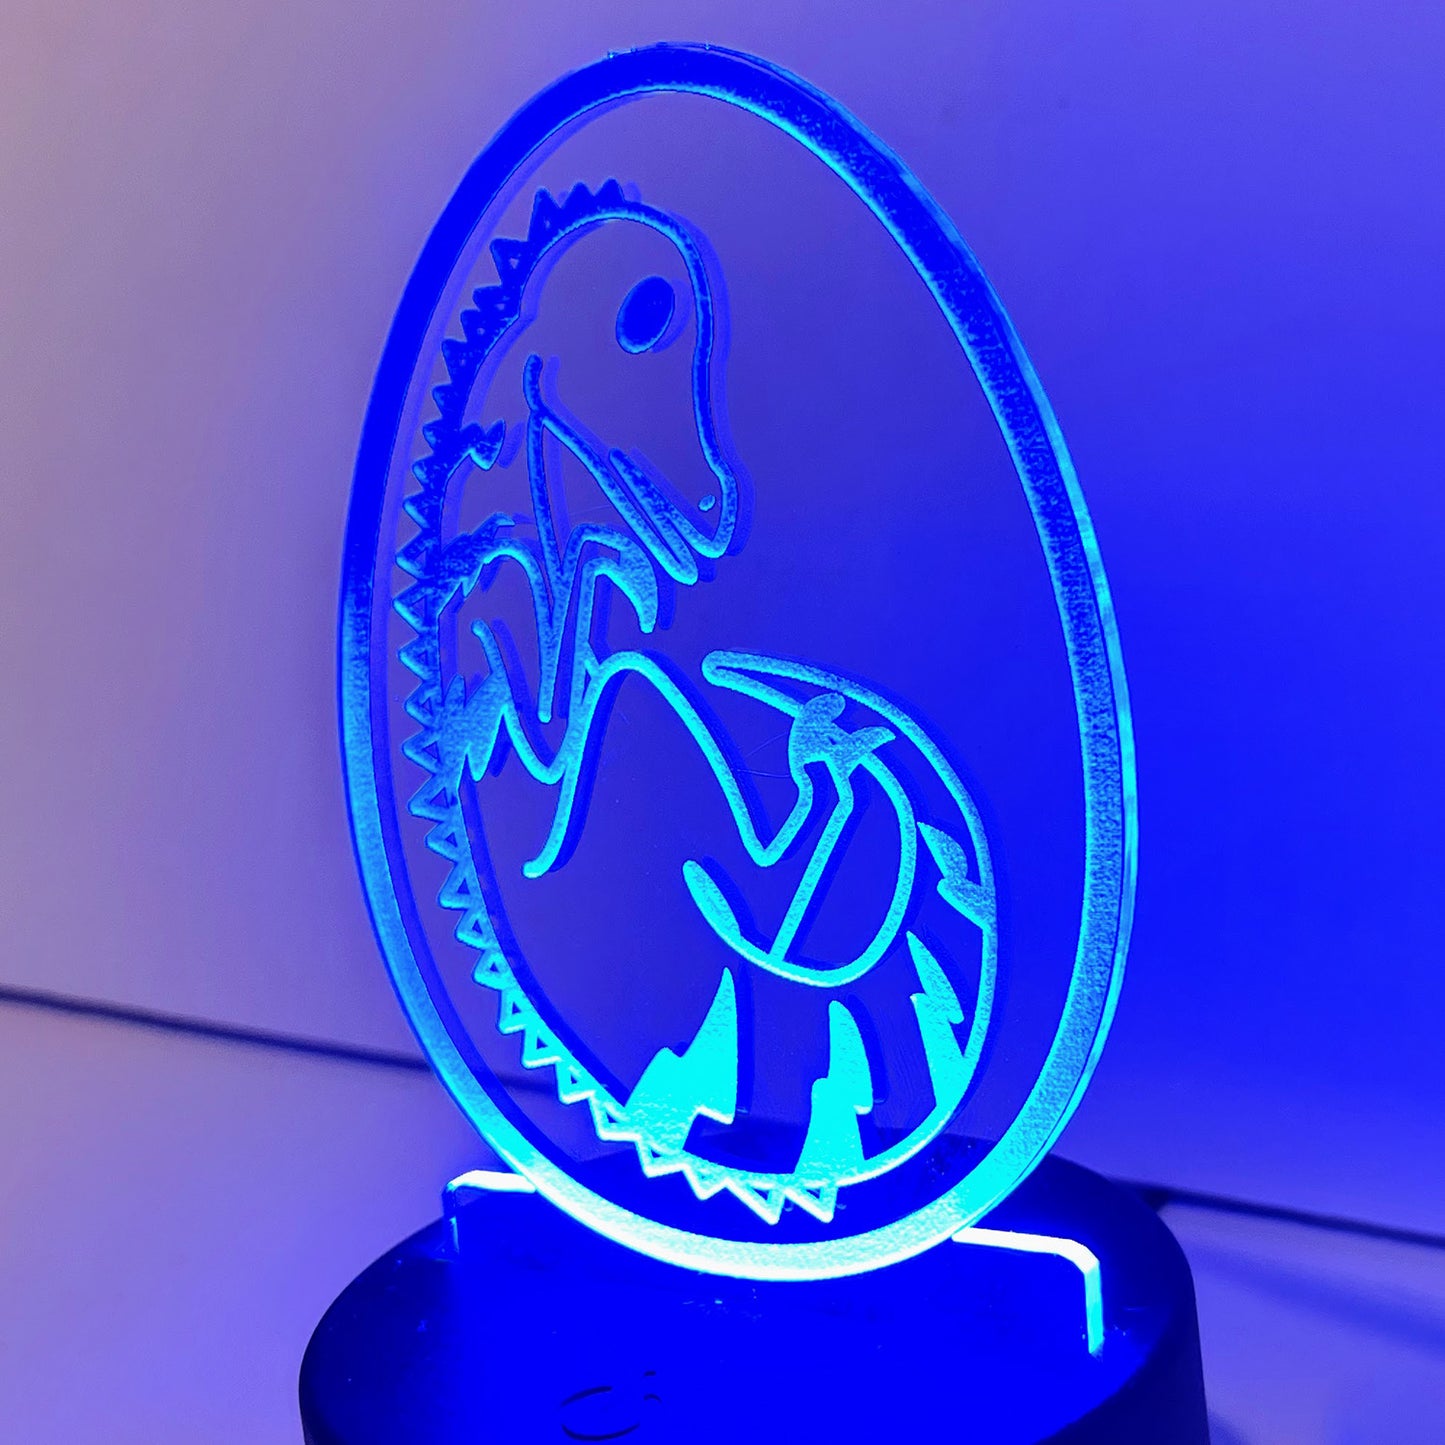 Dinosaur Egg LED Nightlight Insert